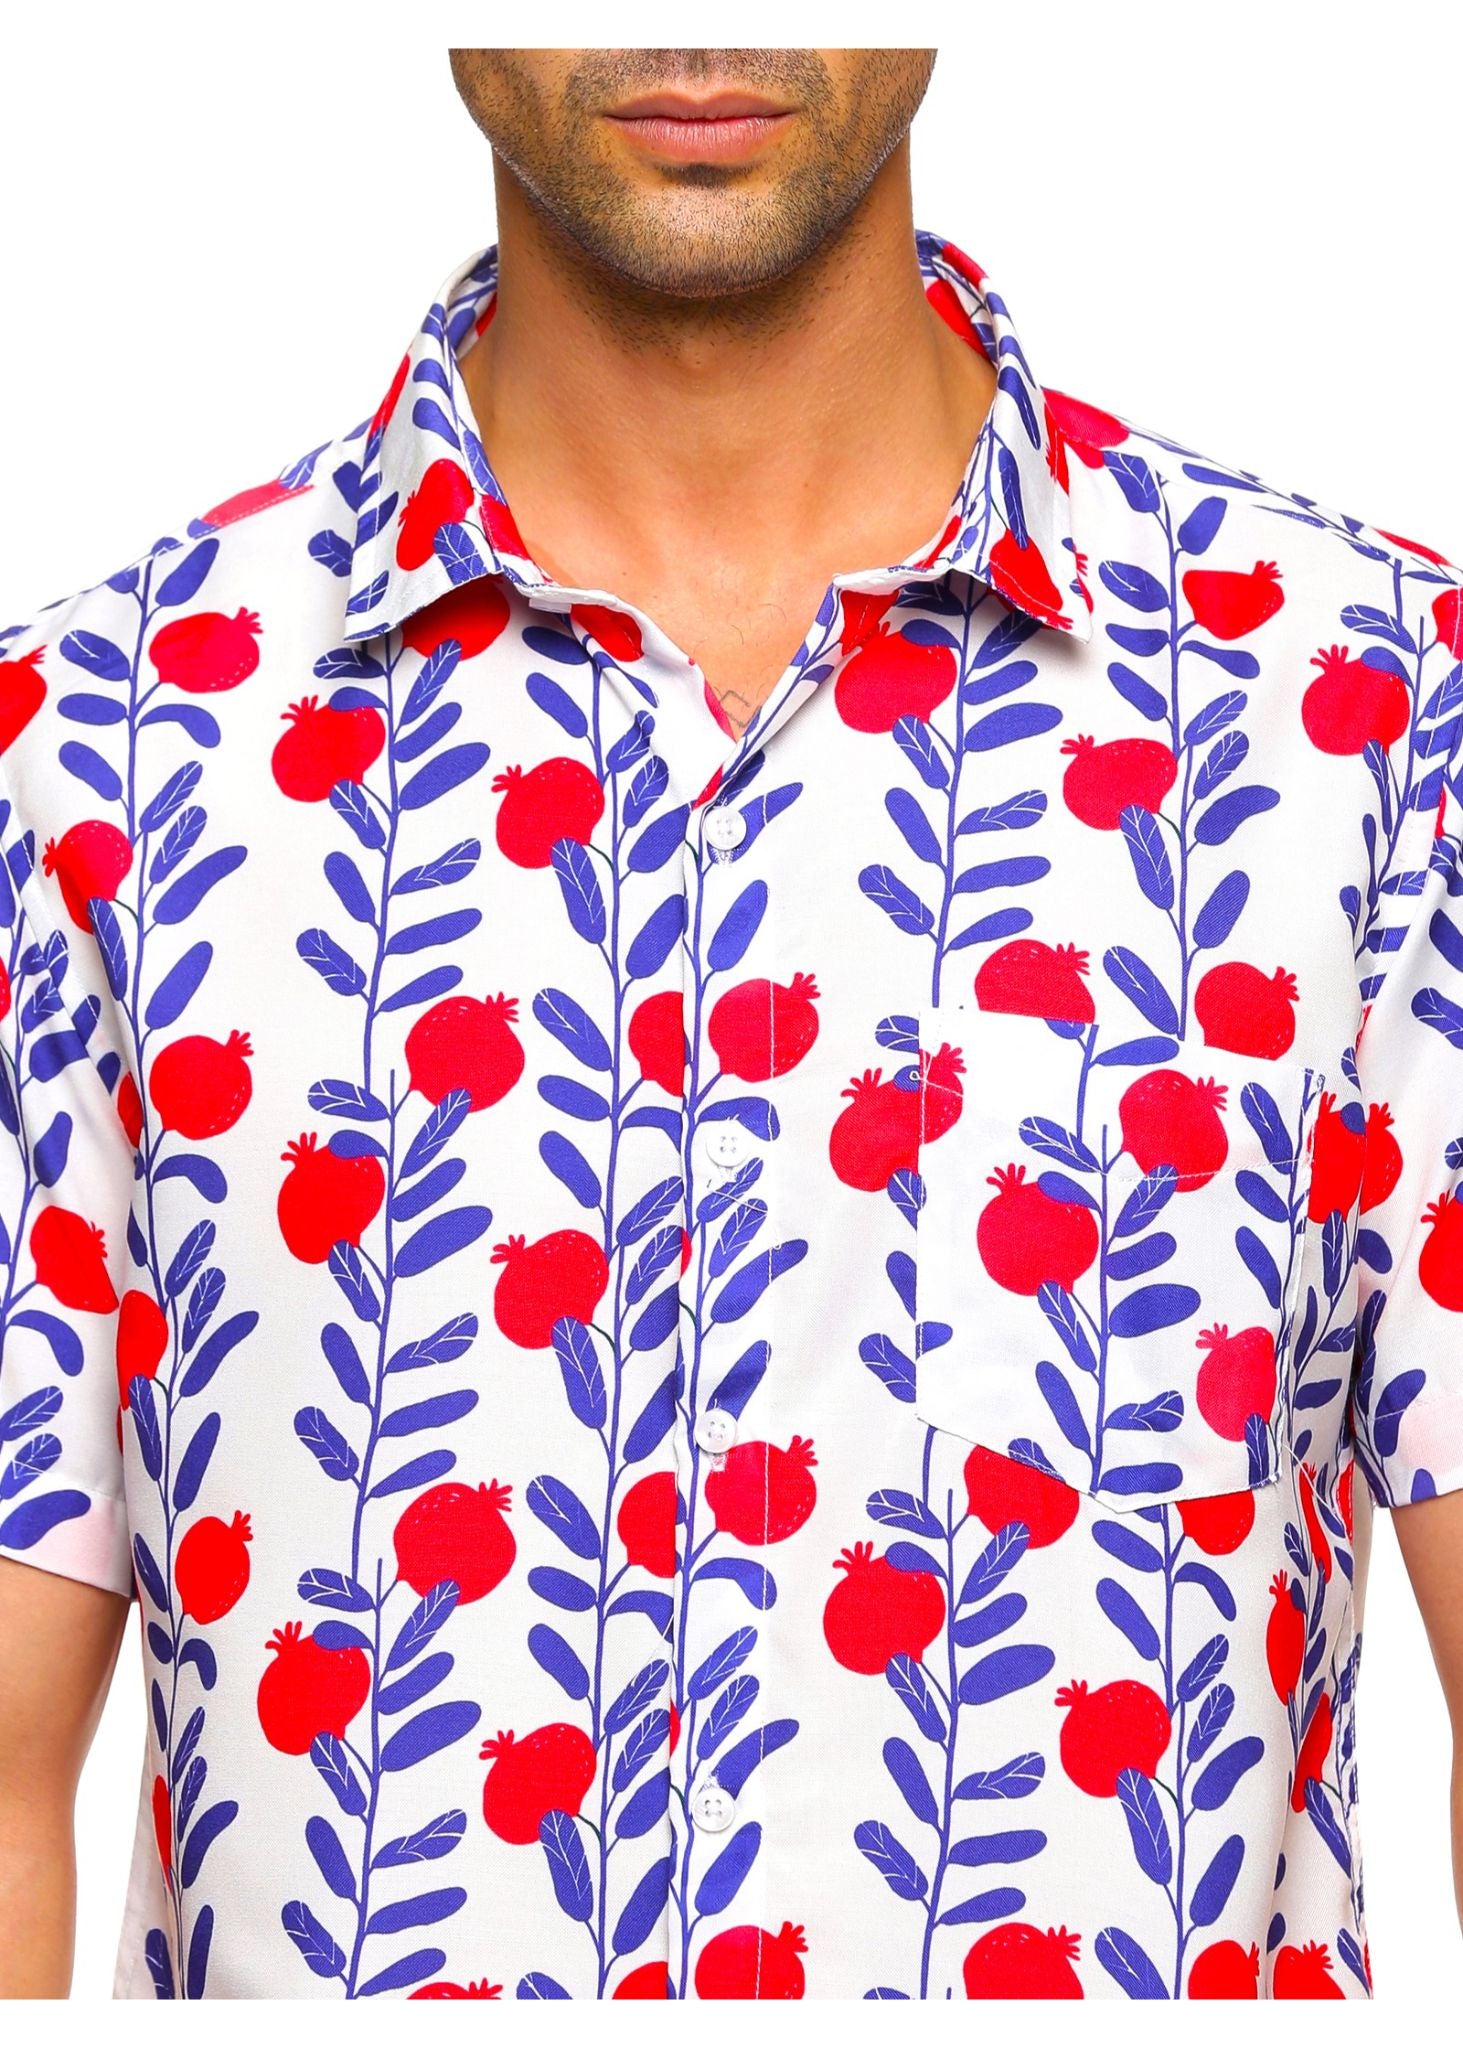 Pomegranate Couple Matching Shirts - Tusok